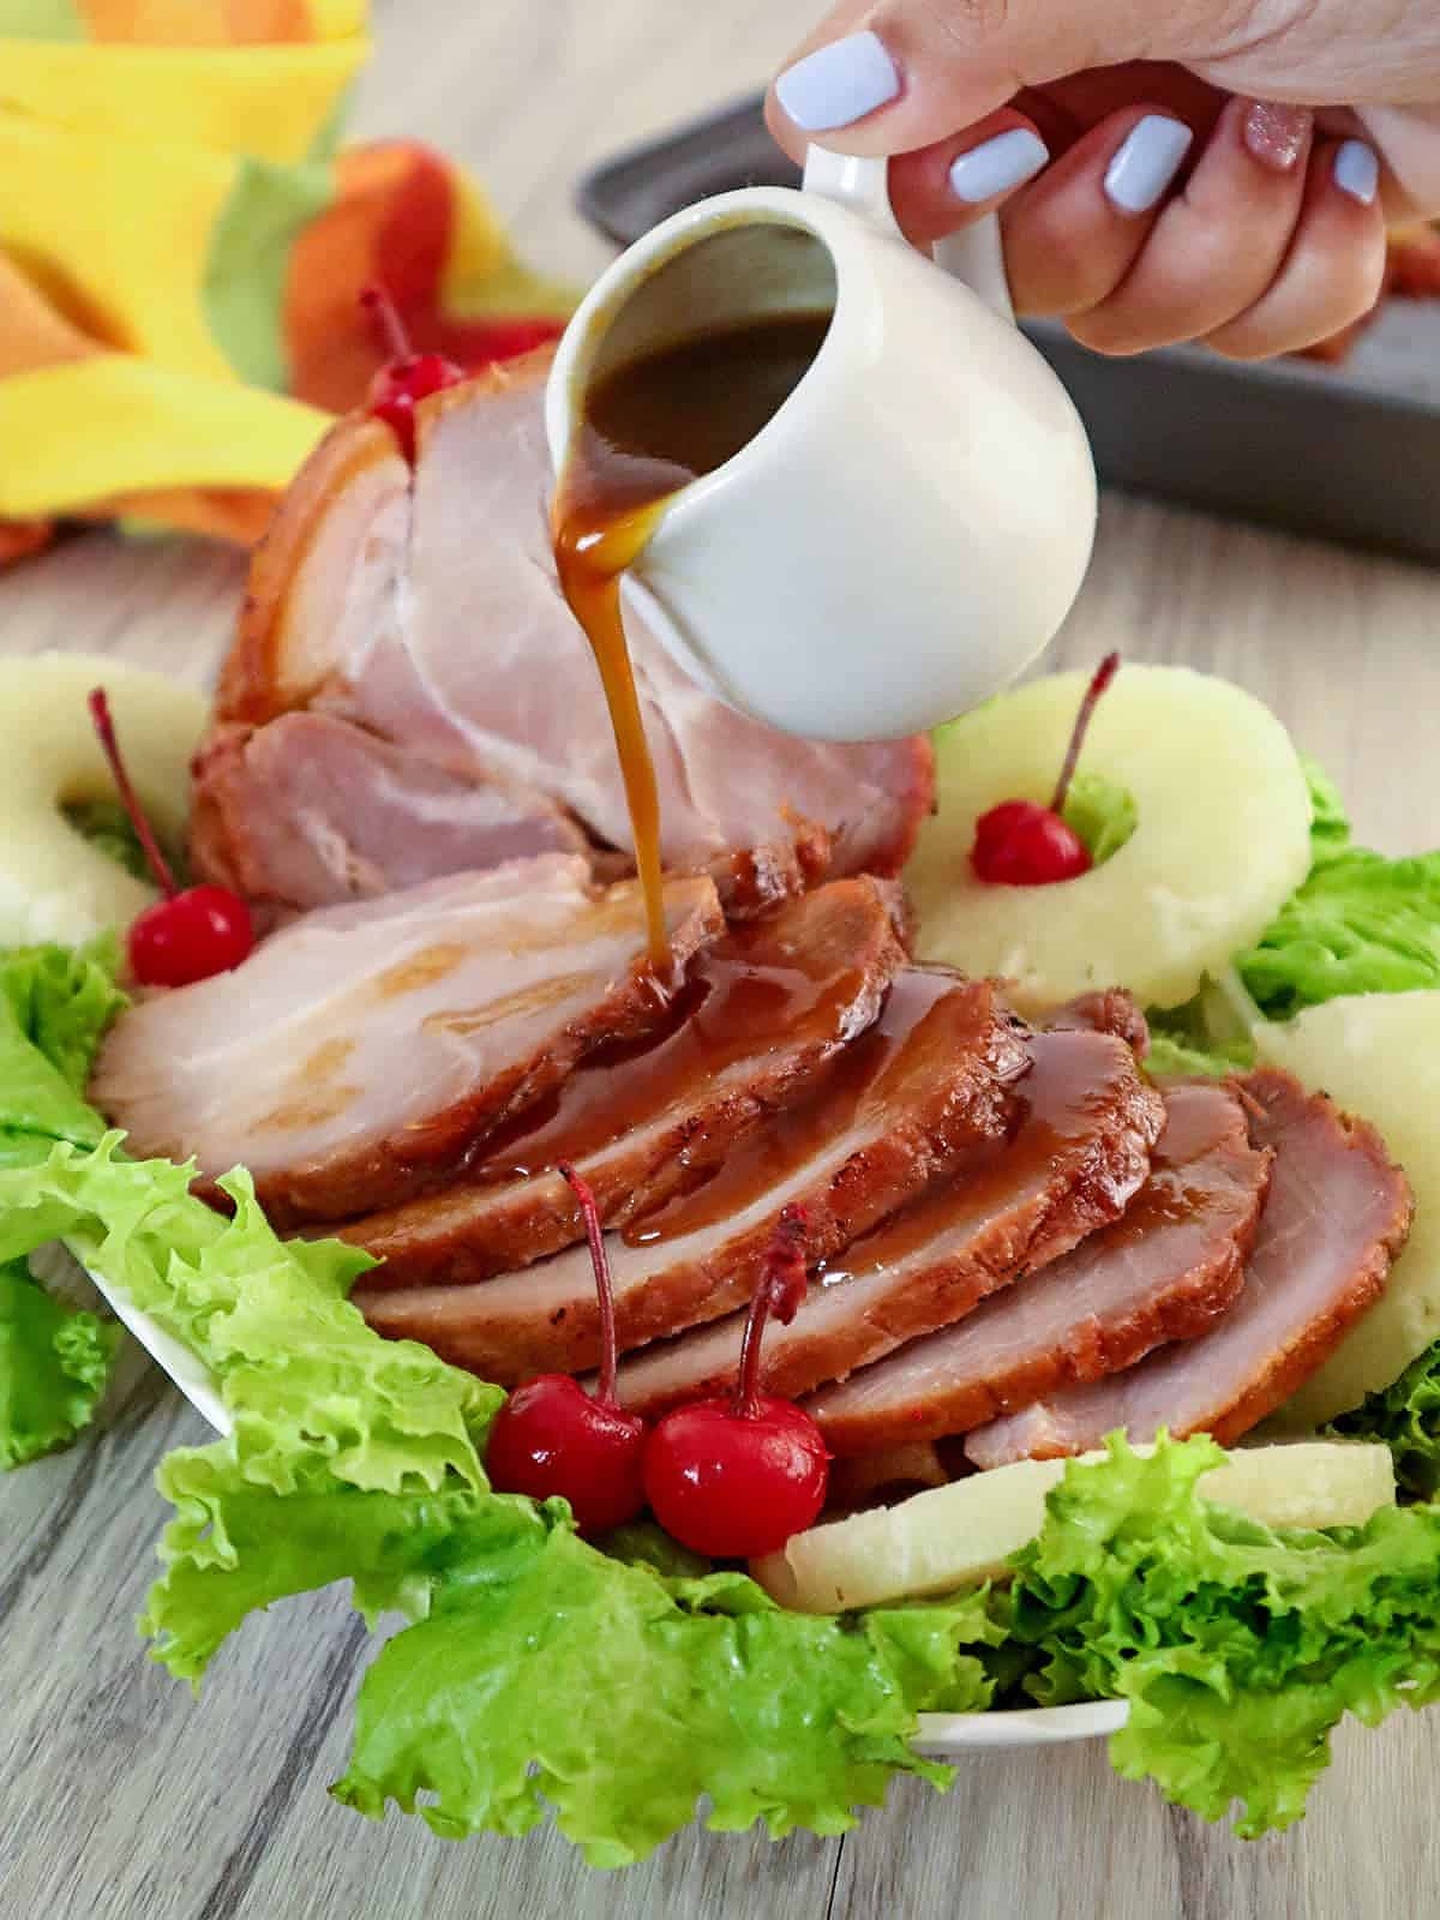 Captivating Juicy Ham With Glaze Background